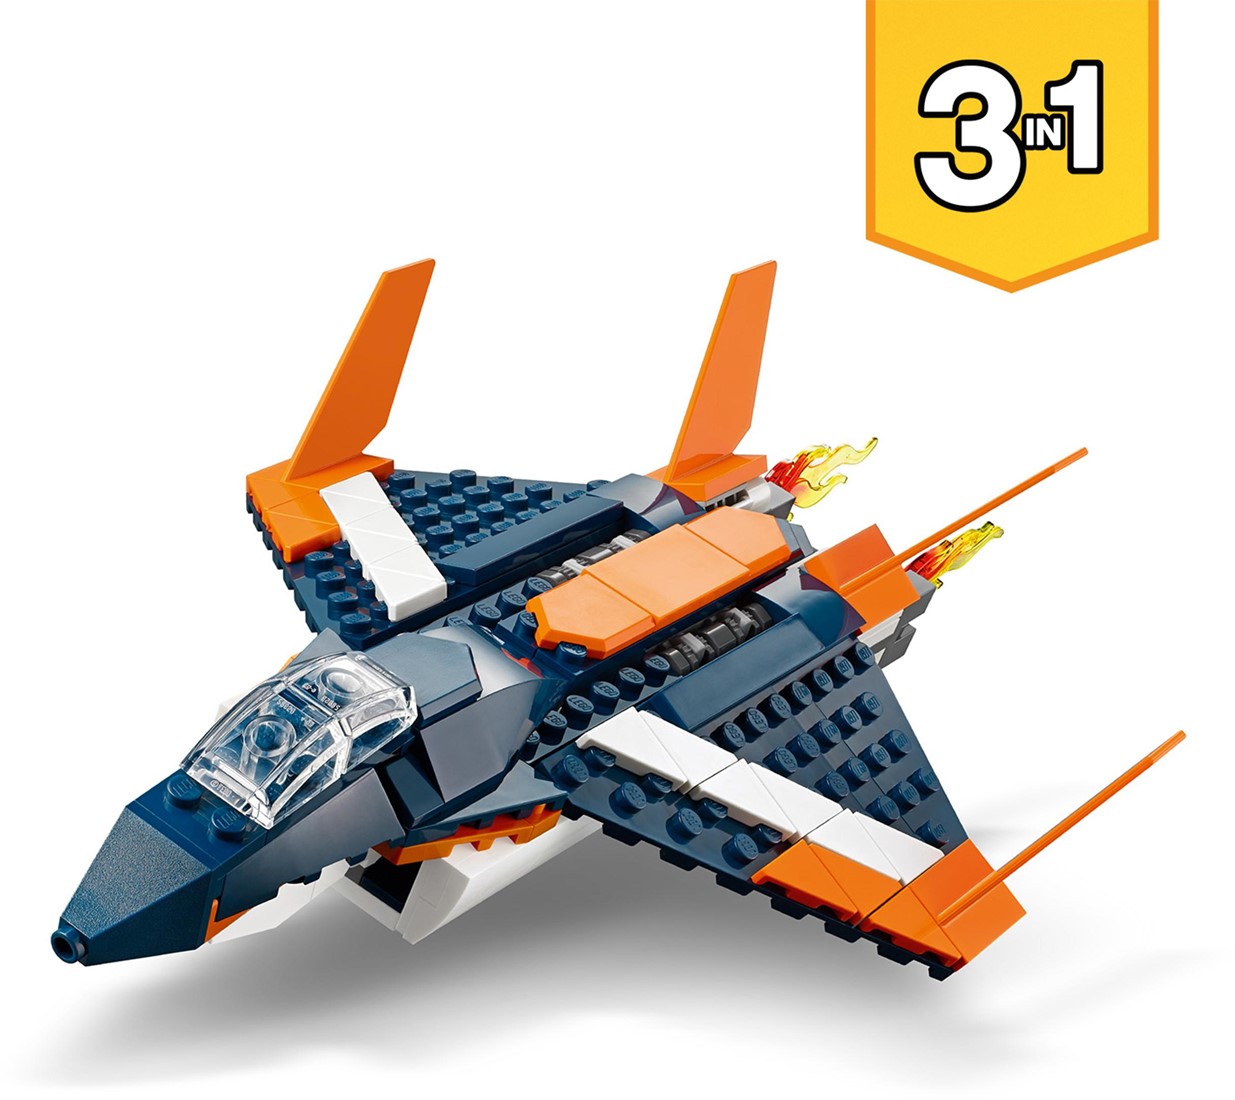 ik klaag kanker bezorgdheid LEGO Creator 3in1 Supersonische straaljager & boot set 31126